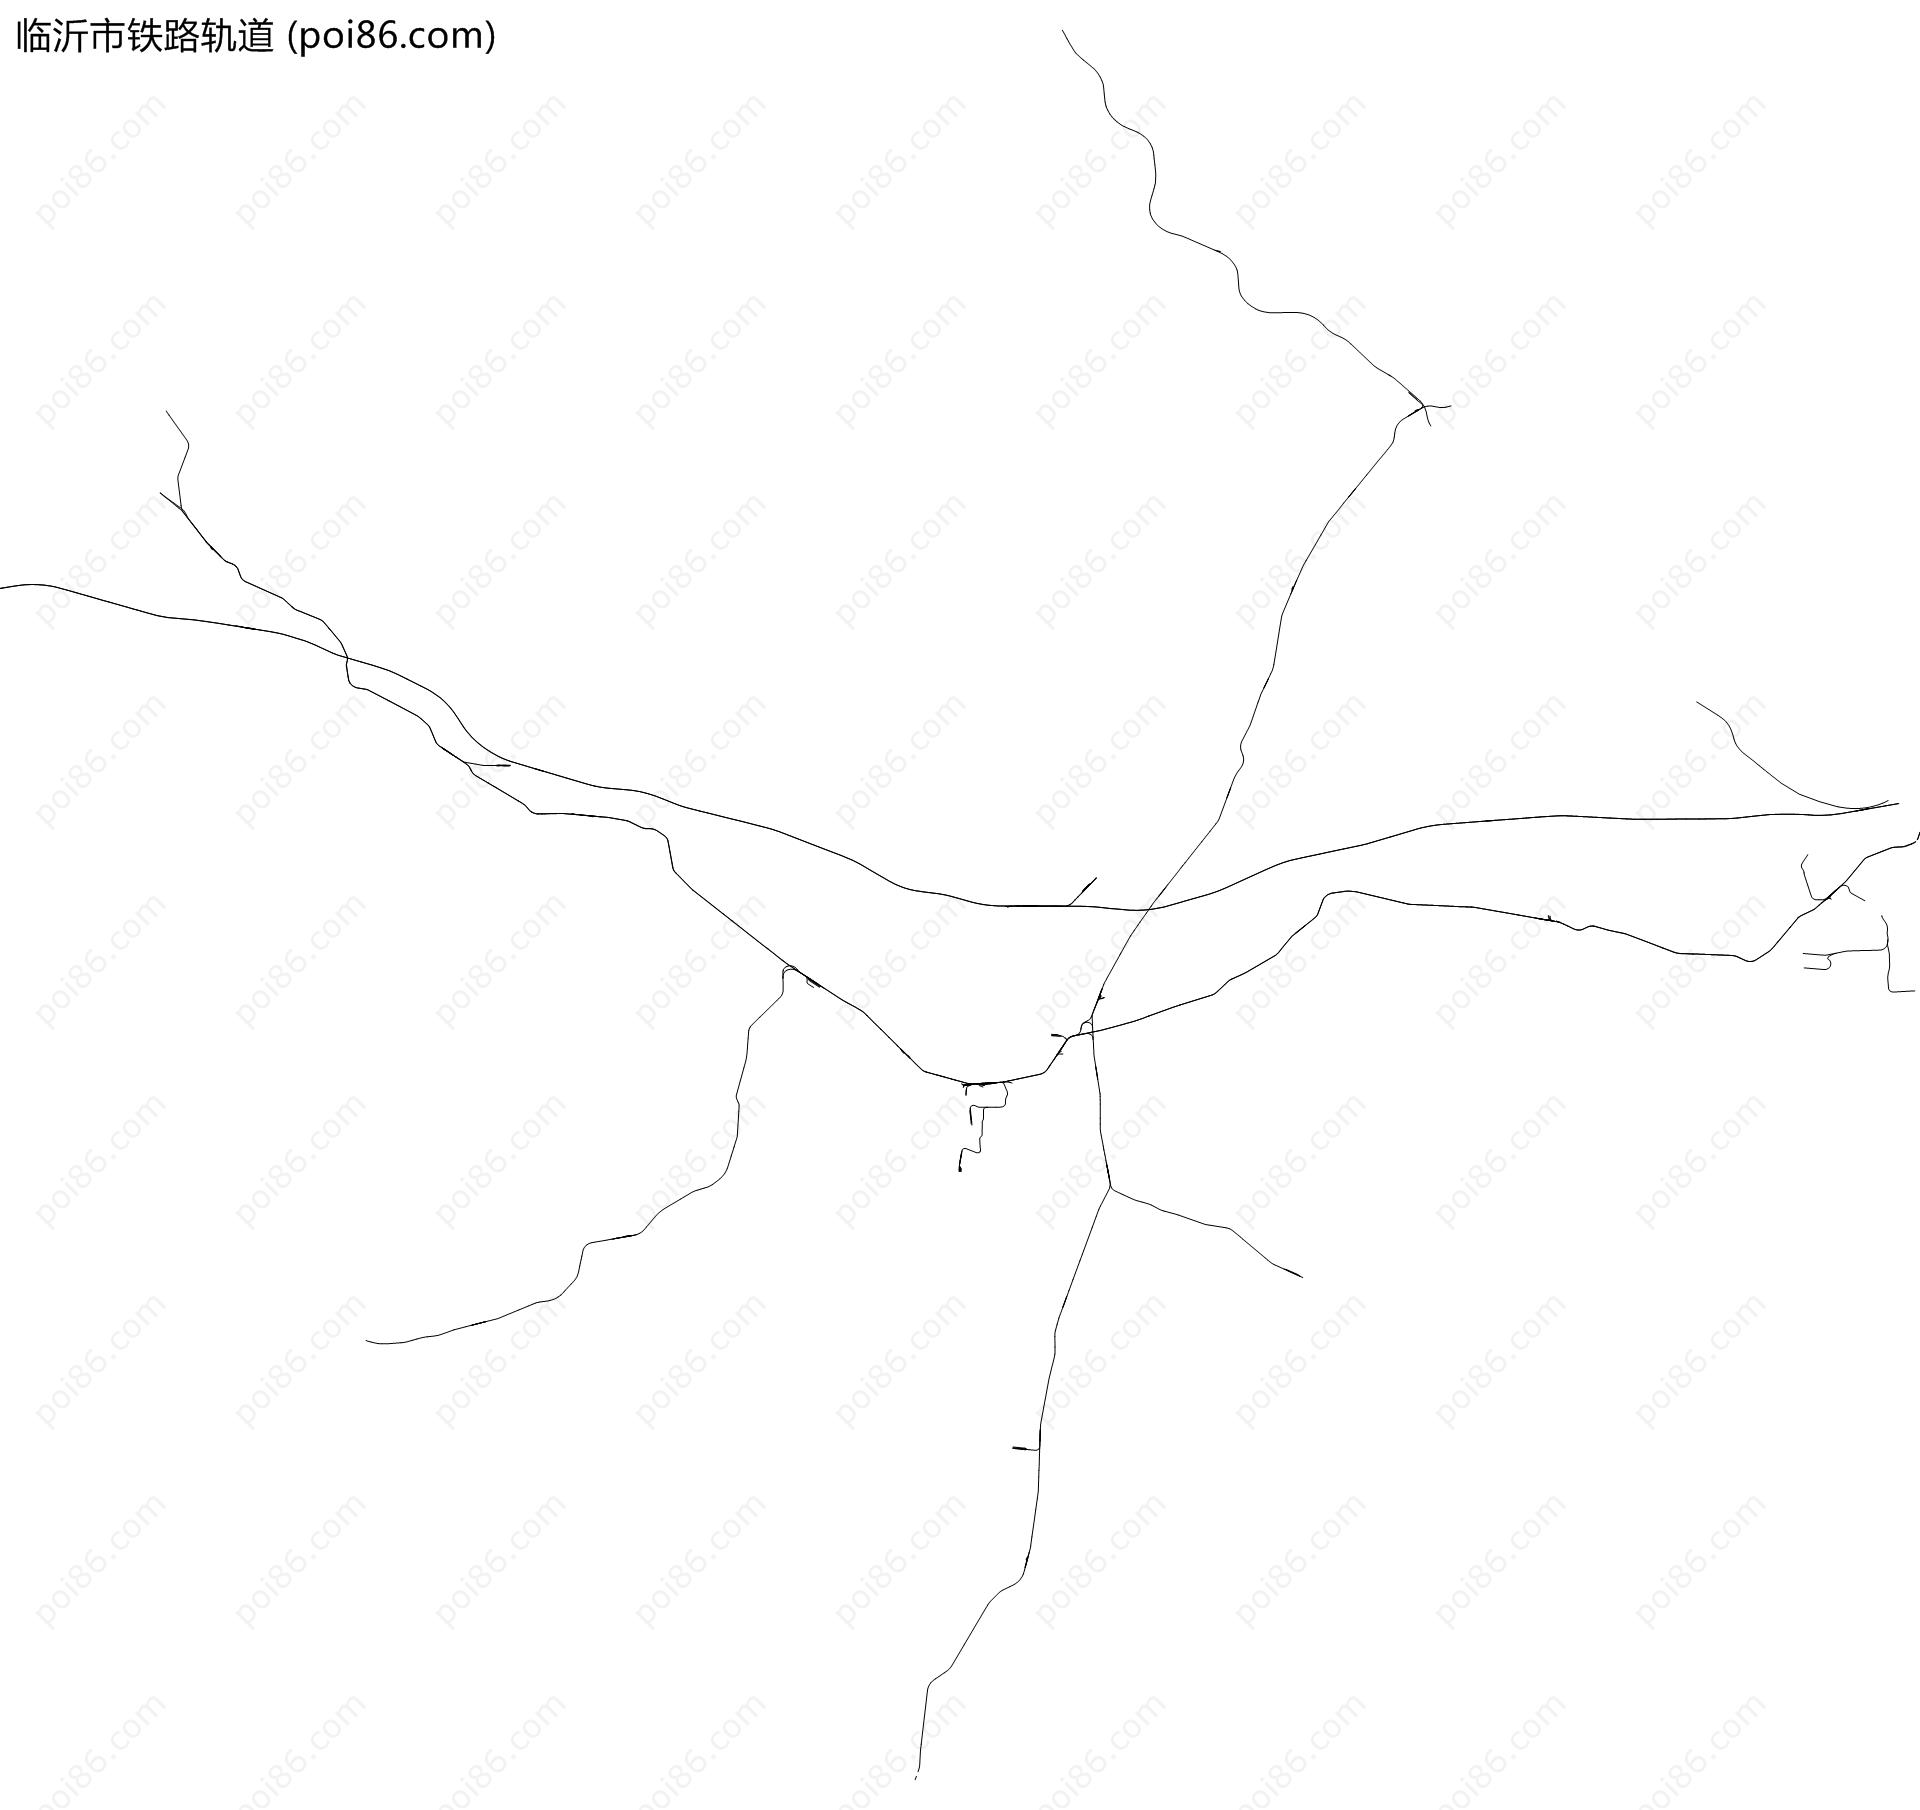 临沂市铁路轨道地图